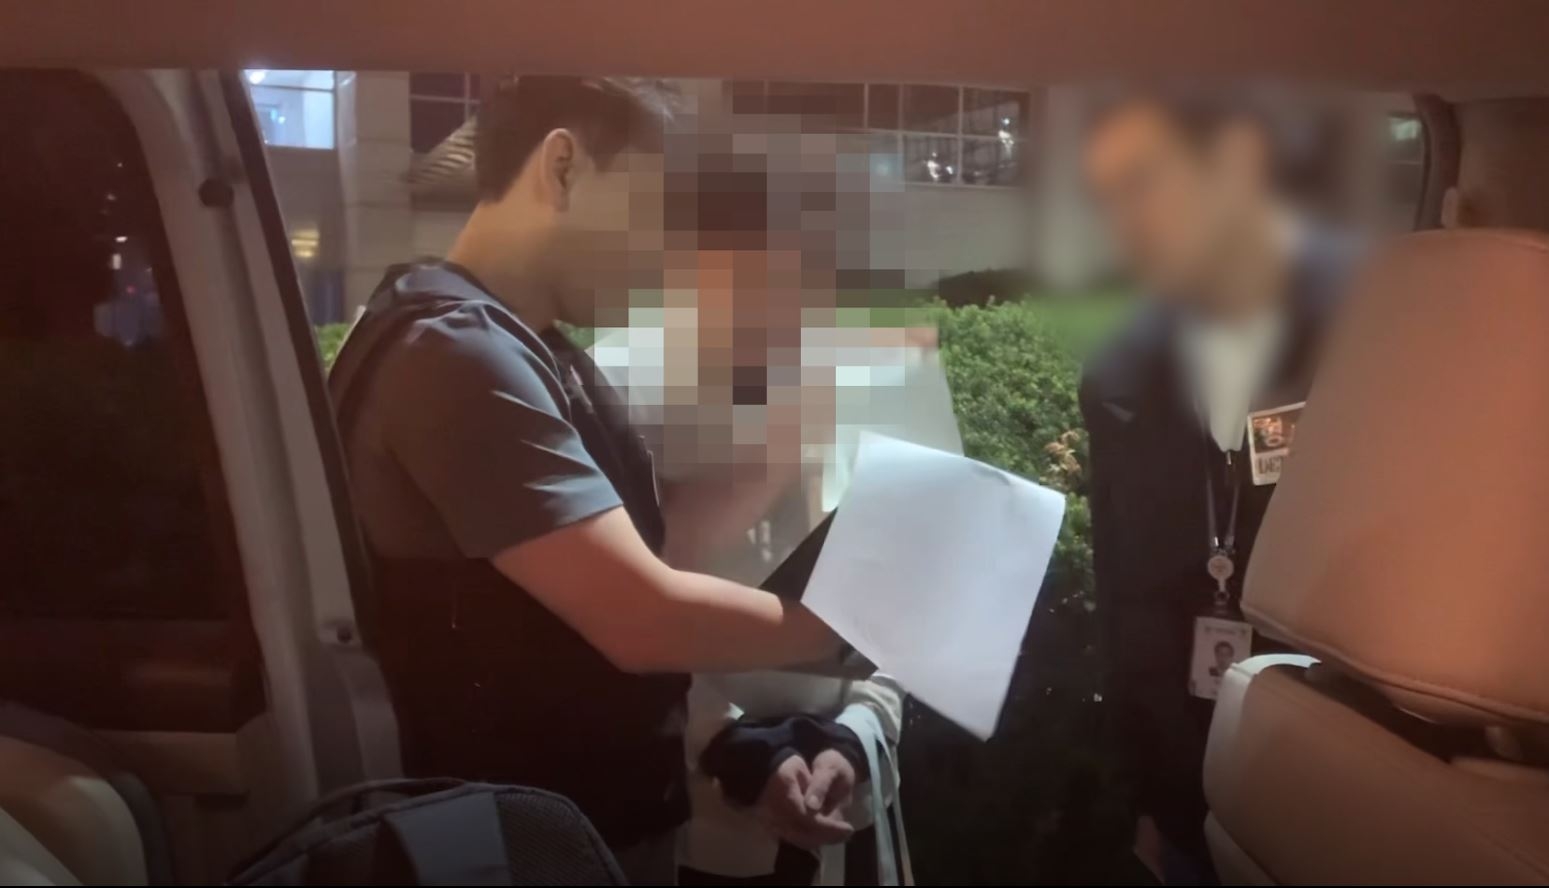 경찰이 중고거래 사이트에서 수년간 판매 사기를 친 피의자에 대해 체포영장을 집행하고 있다. 경기남부경찰청 제공